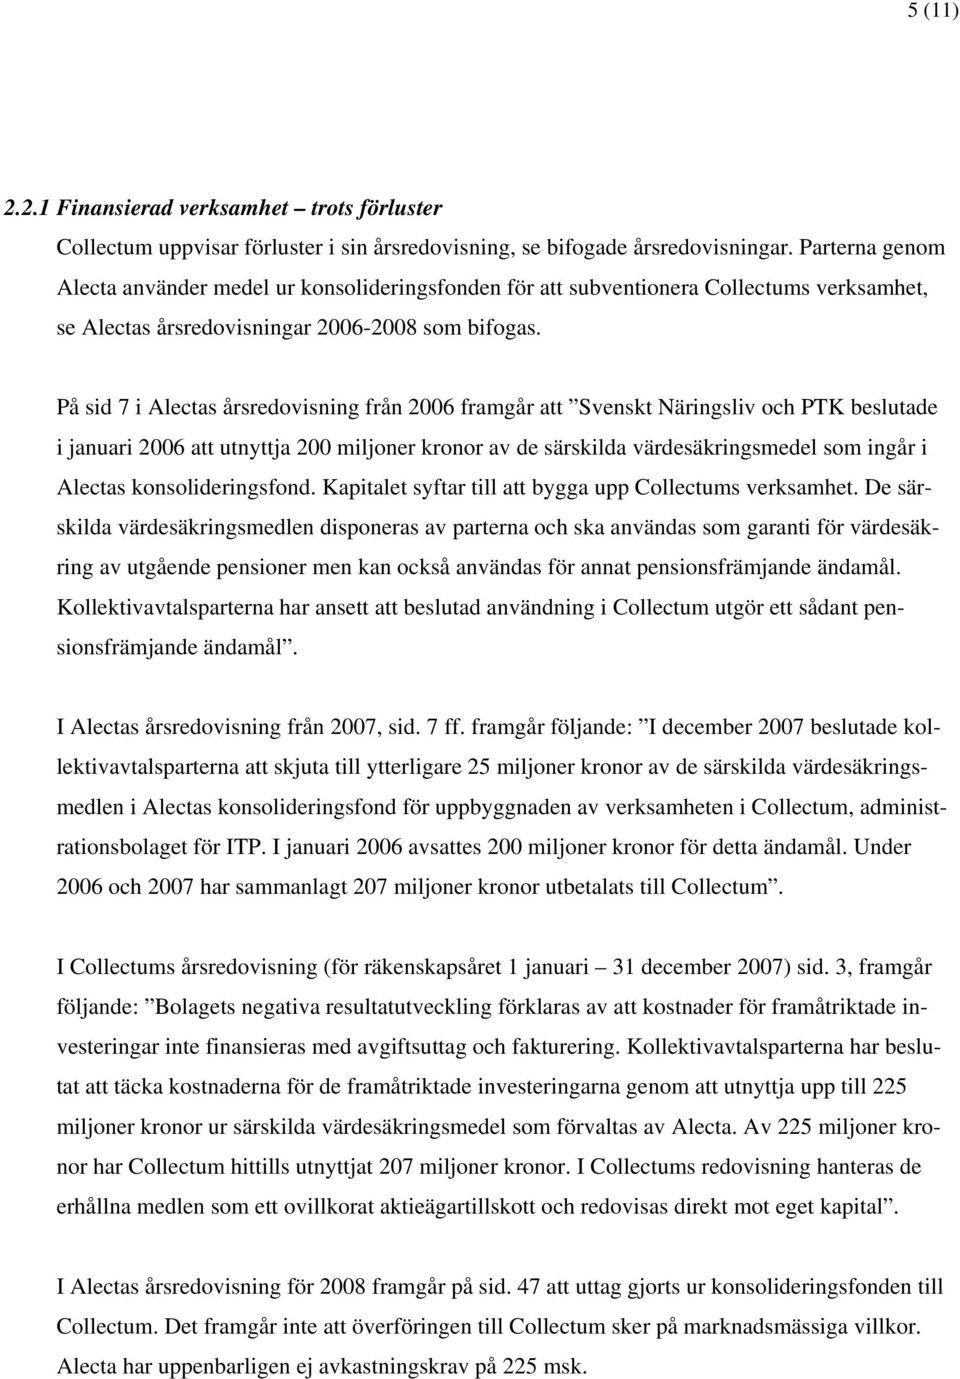 På sid 7 i Alectas årsredovisning från 2006 framgår att Svenskt Näringsliv och PTK beslutade i januari 2006 att utnyttja 200 miljoner kronor av de särskilda värdesäkringsmedel som ingår i Alectas